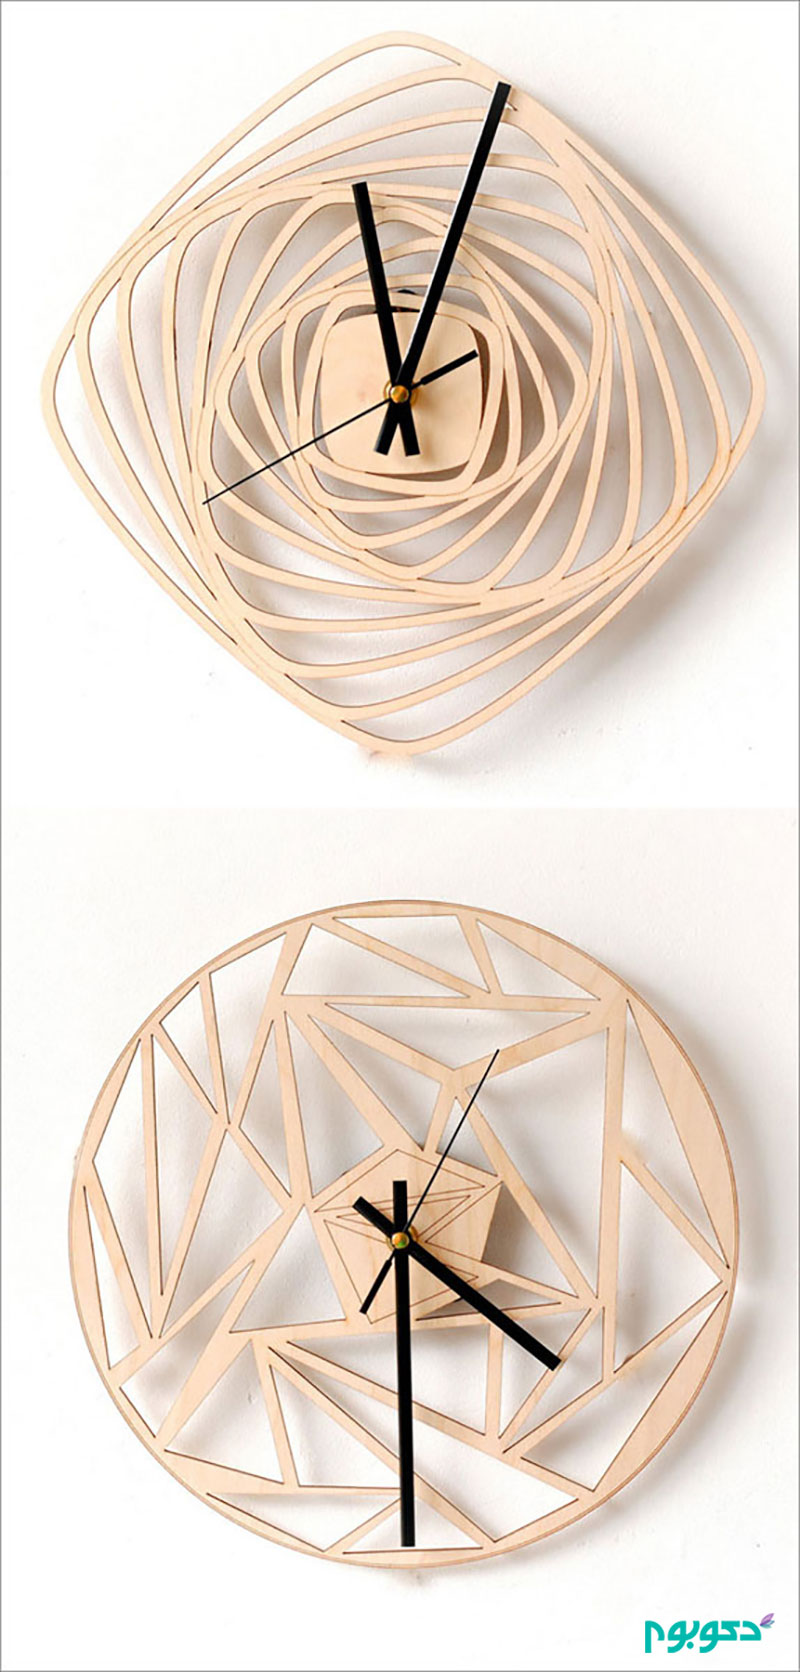 modern-geometric-wood-clock-home-decor-240517-1012-05.jpg